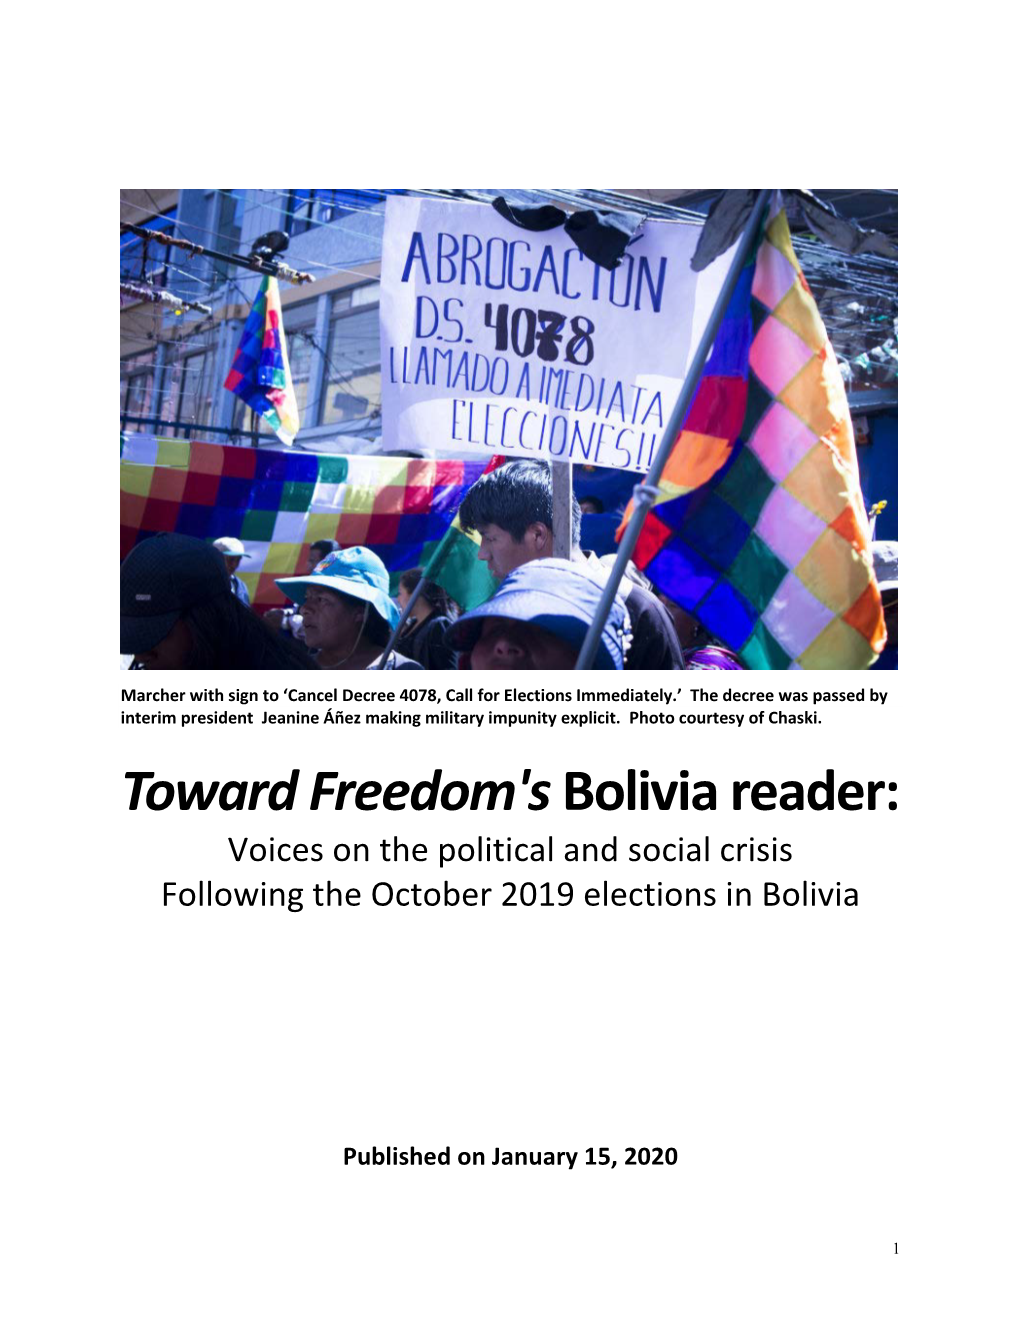 Toward Freedom's Bolivia Reader Here